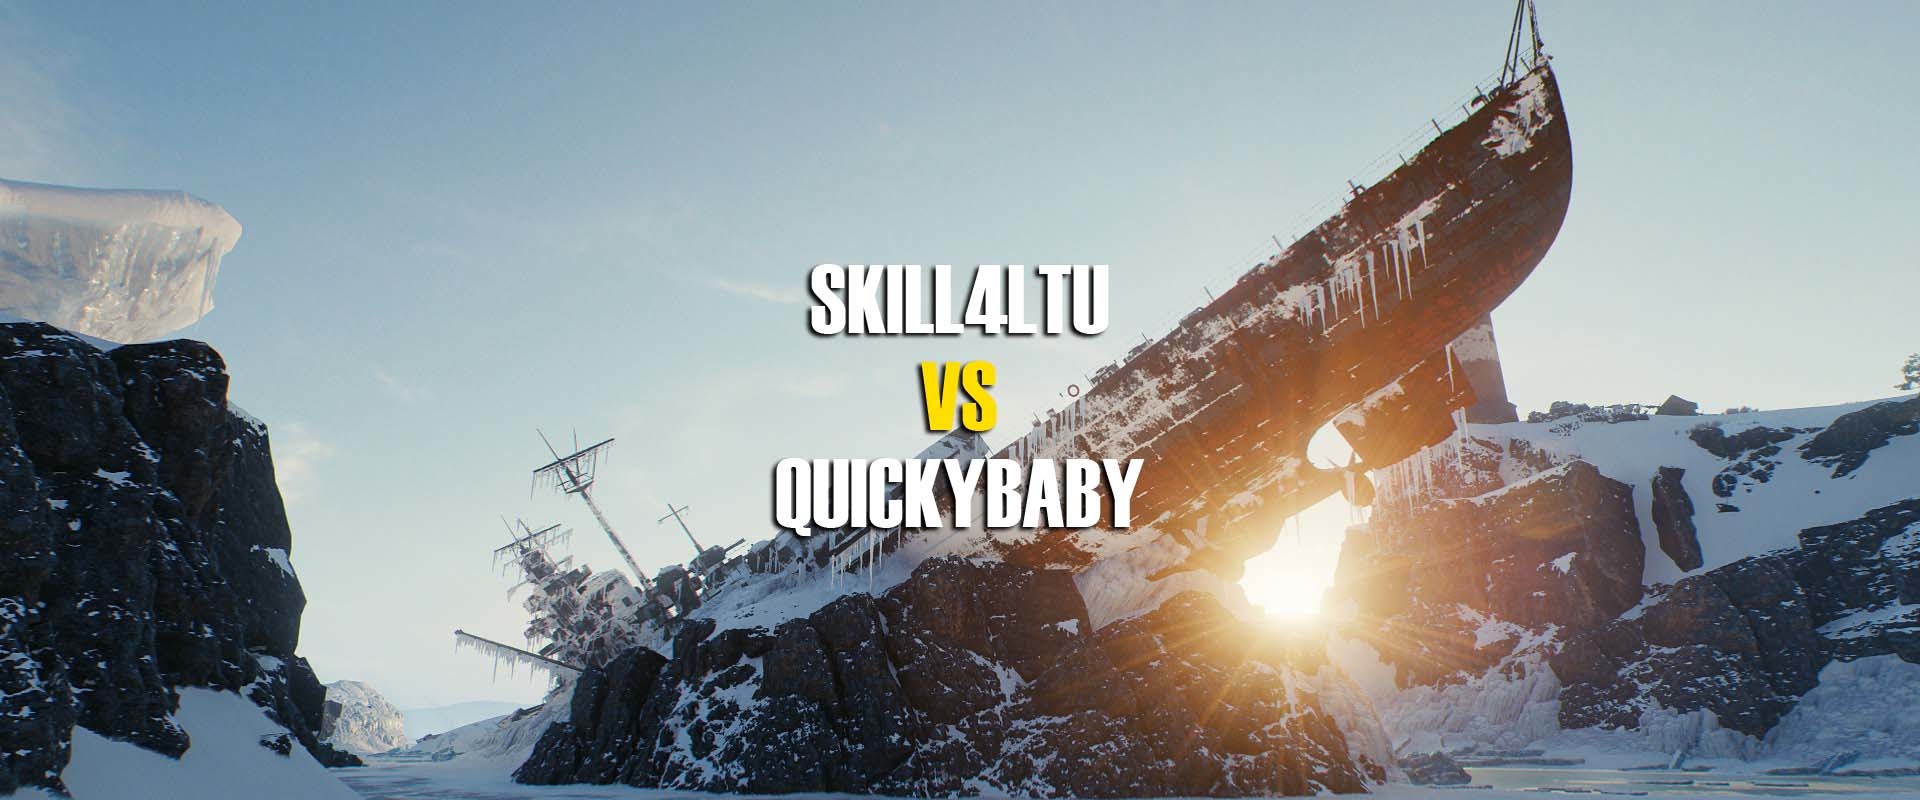 Skill4ltu vs Quickybaby, avagy a streamerek leszámolása!